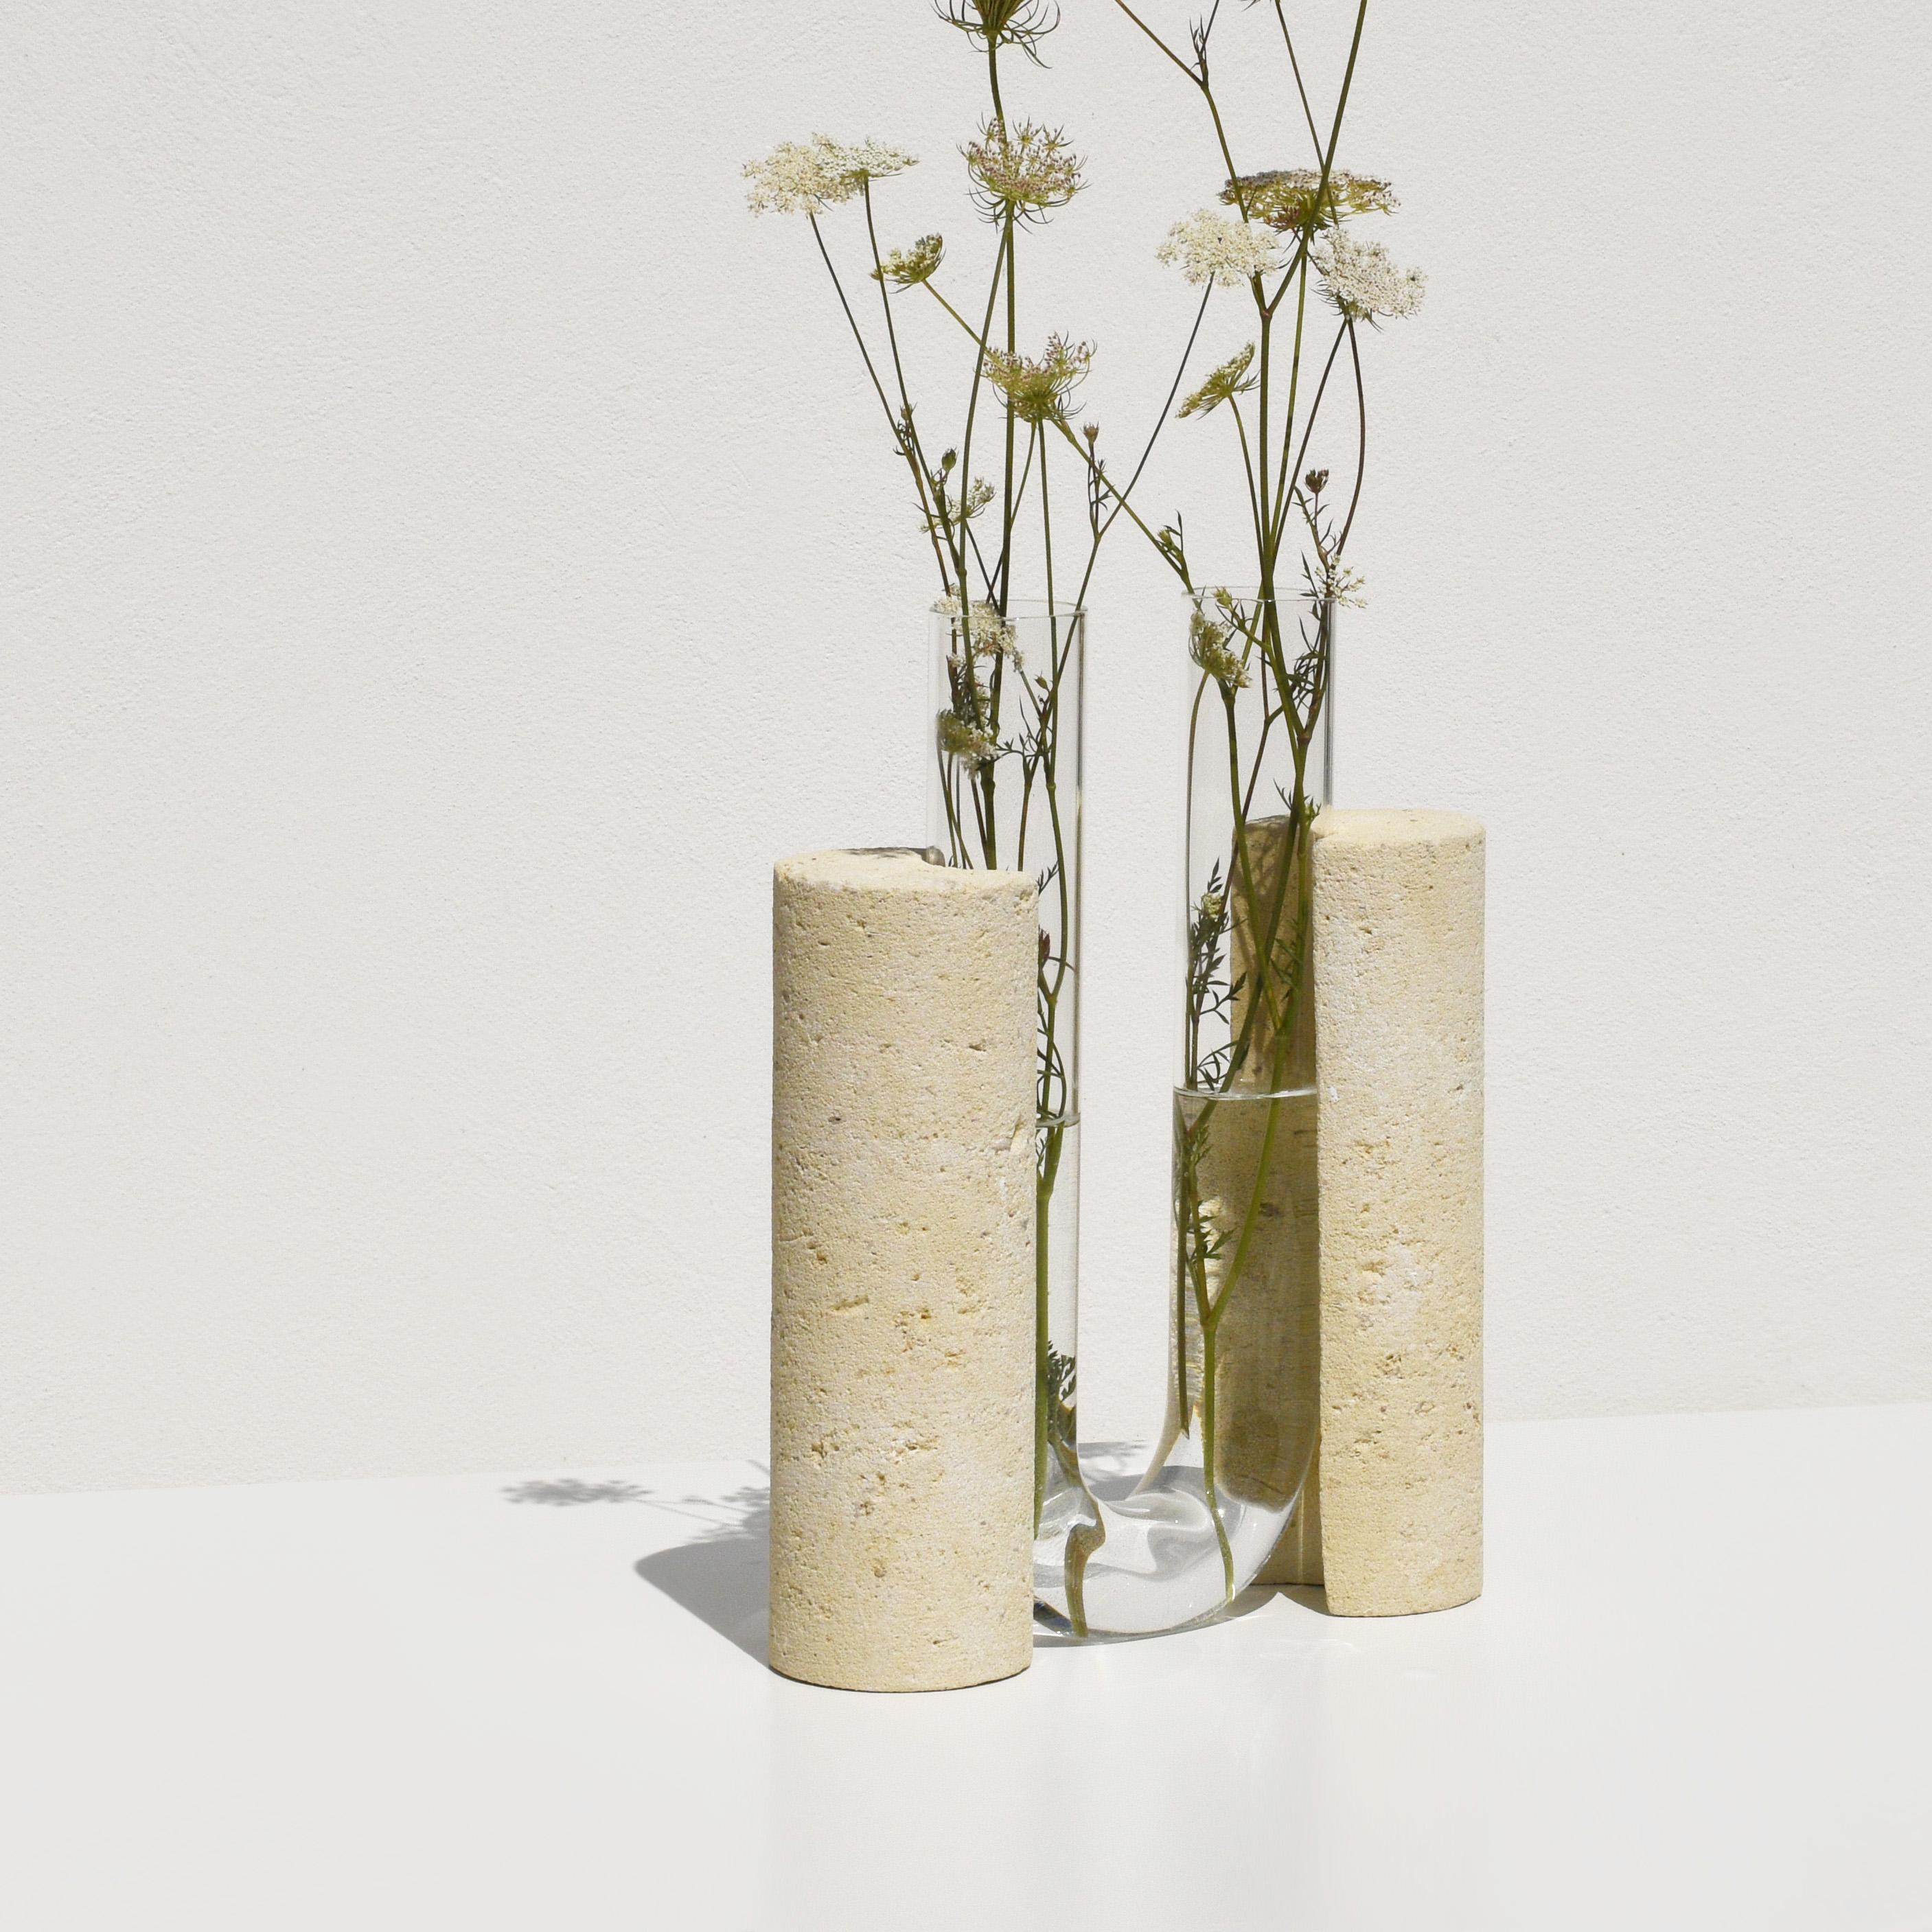 Contemporary Clear Cochlea Dello Sviluppo Vase by Coki Barbieri For Sale